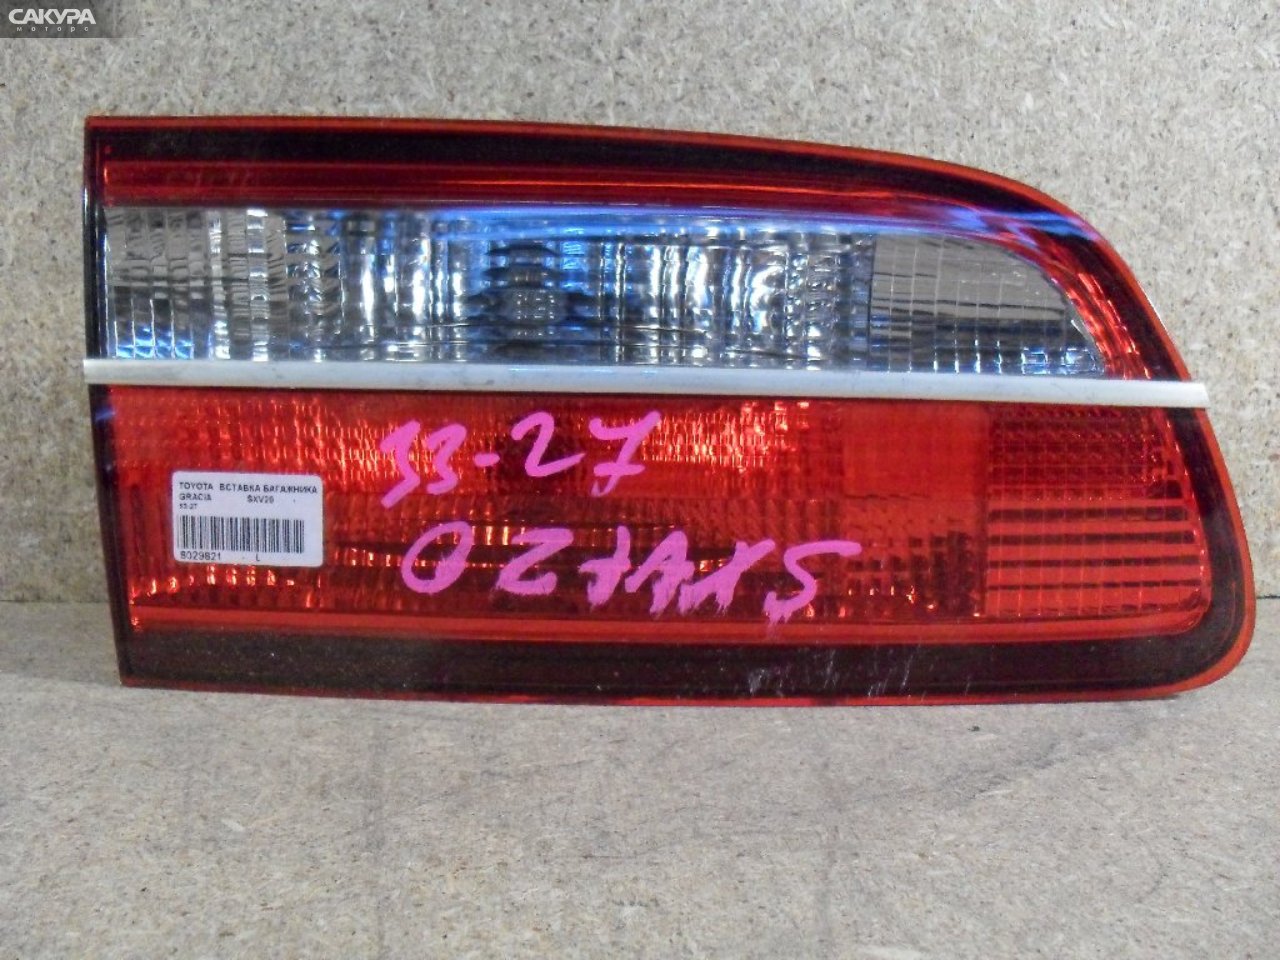 Фонарь вставка багажника левый Toyota Camry Gracia SXV20 33-27: купить в Сакура Абакан.